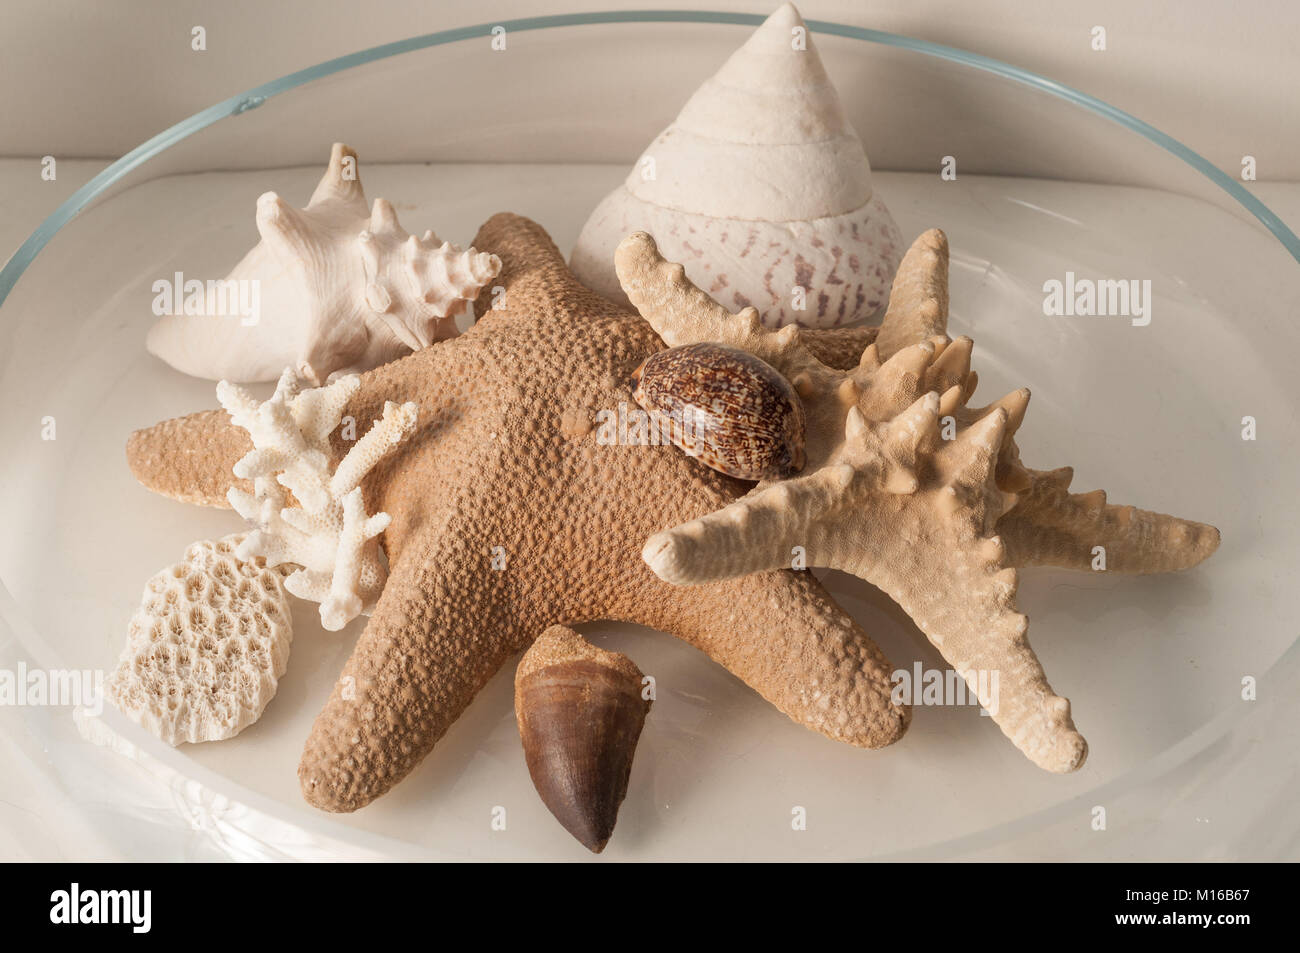 https://c8.alamy.com/compes/m16b67/decoracion-de-interiores-creativos-realizados-con-estrellas-de-mar-corales-y-conchas-en-un-recipiente-de-vidrio-m16b67.jpg